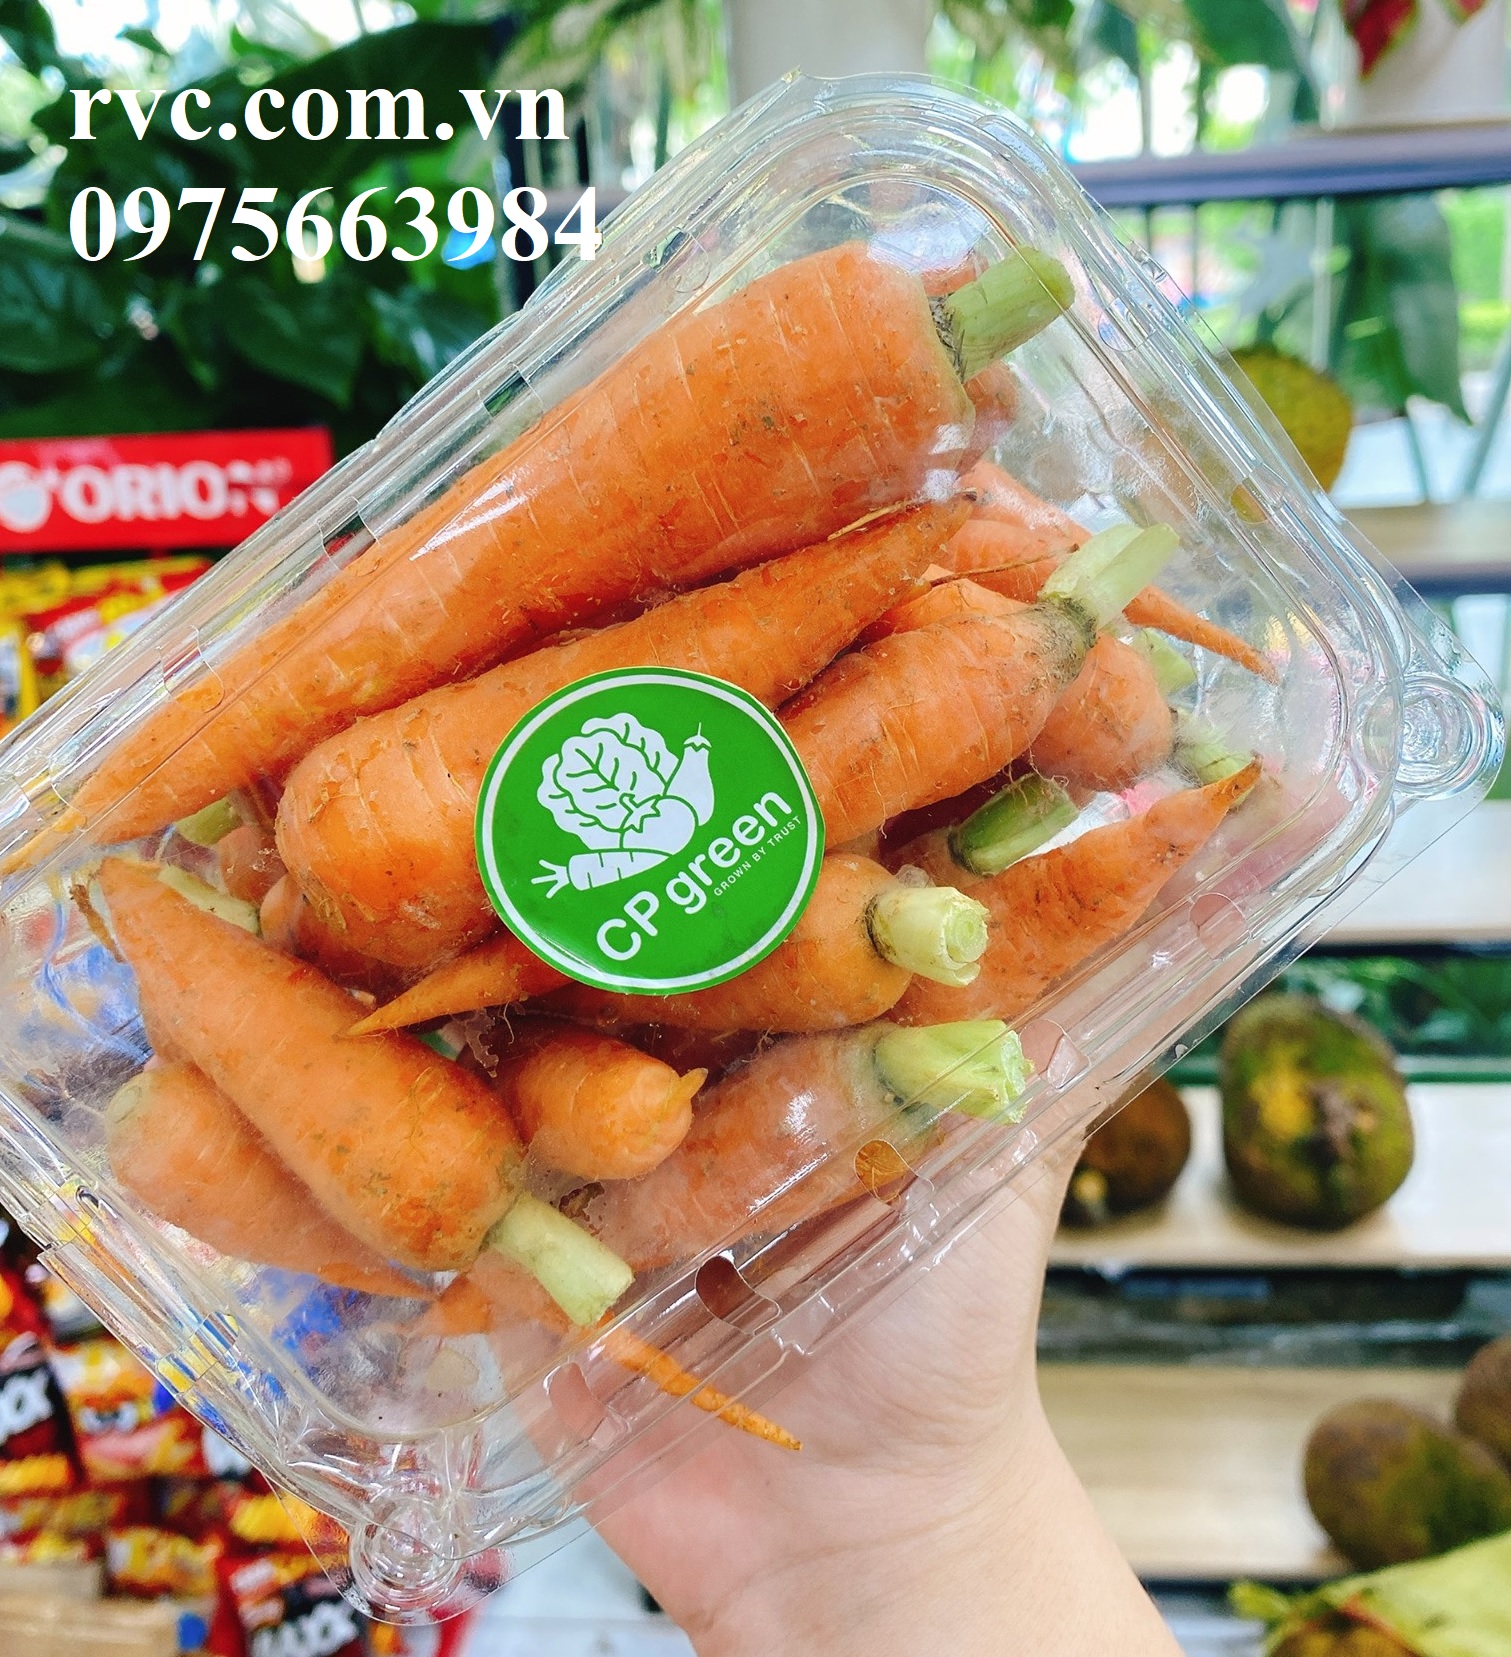 Hộp nhựa P500B đựng 500g hoa quả sử dụng 1 lần chuyên cung cấp vào siêu thị  1800724994572759552